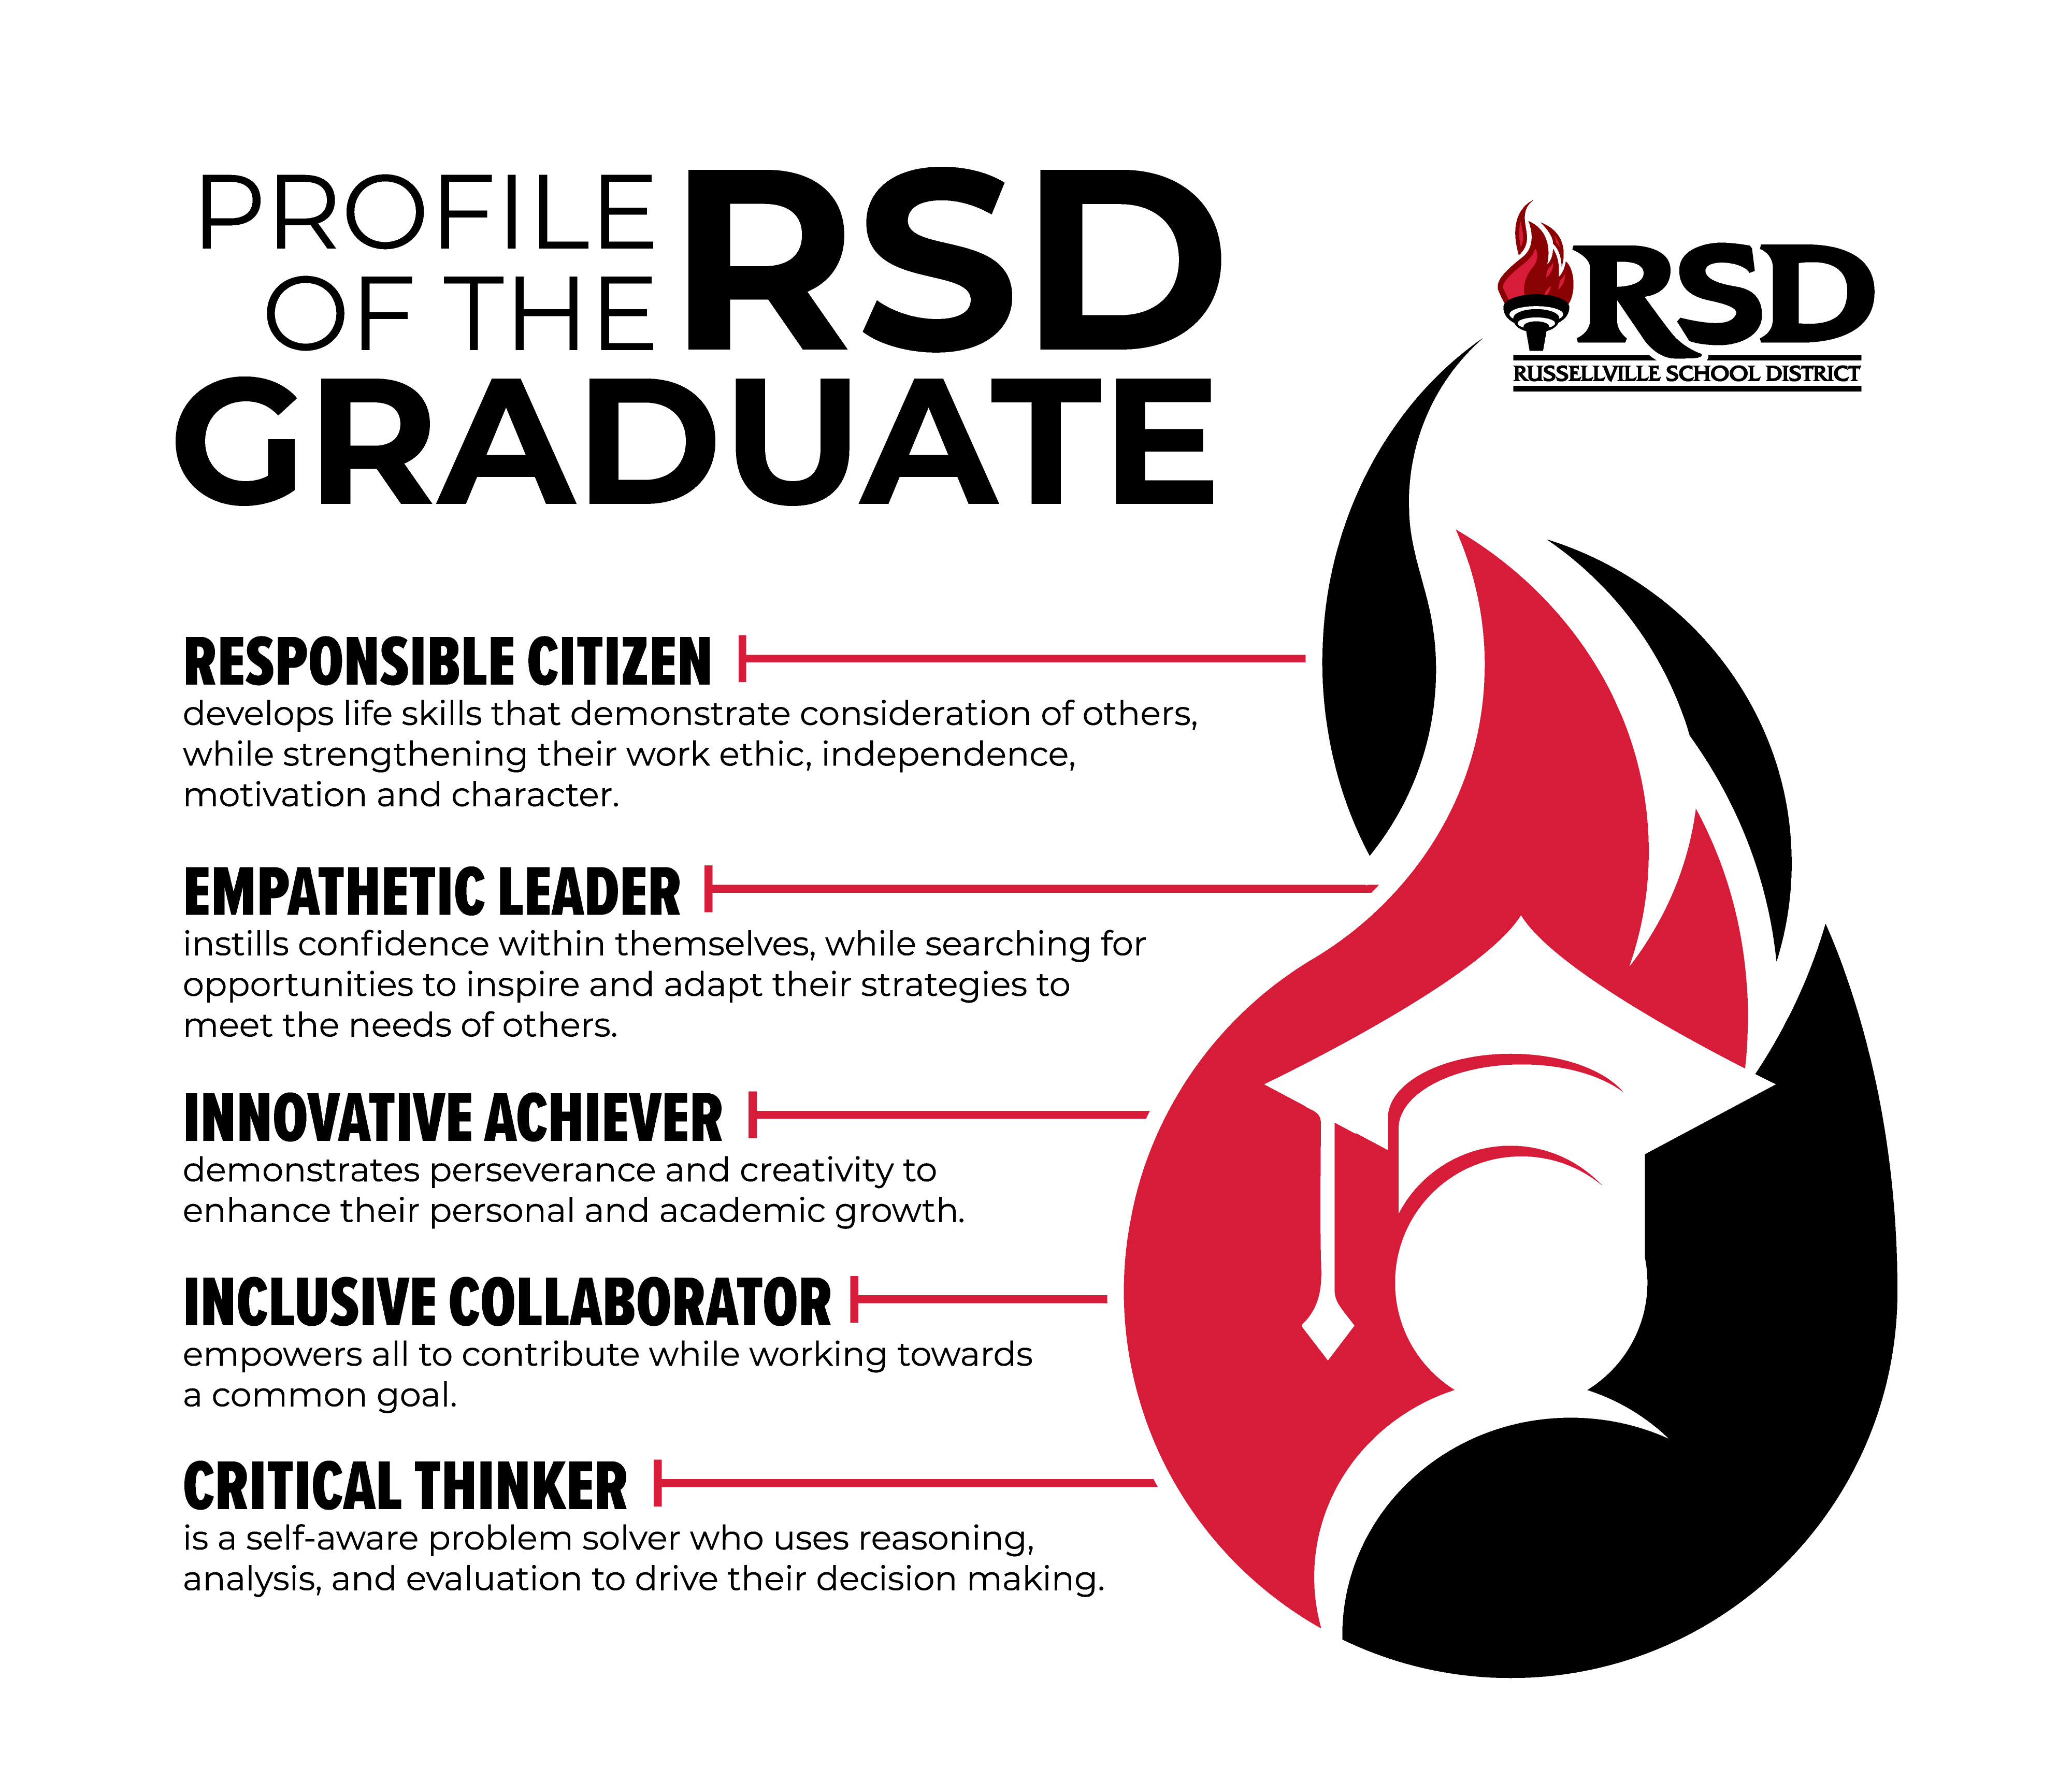 profile of the rsd graduate image